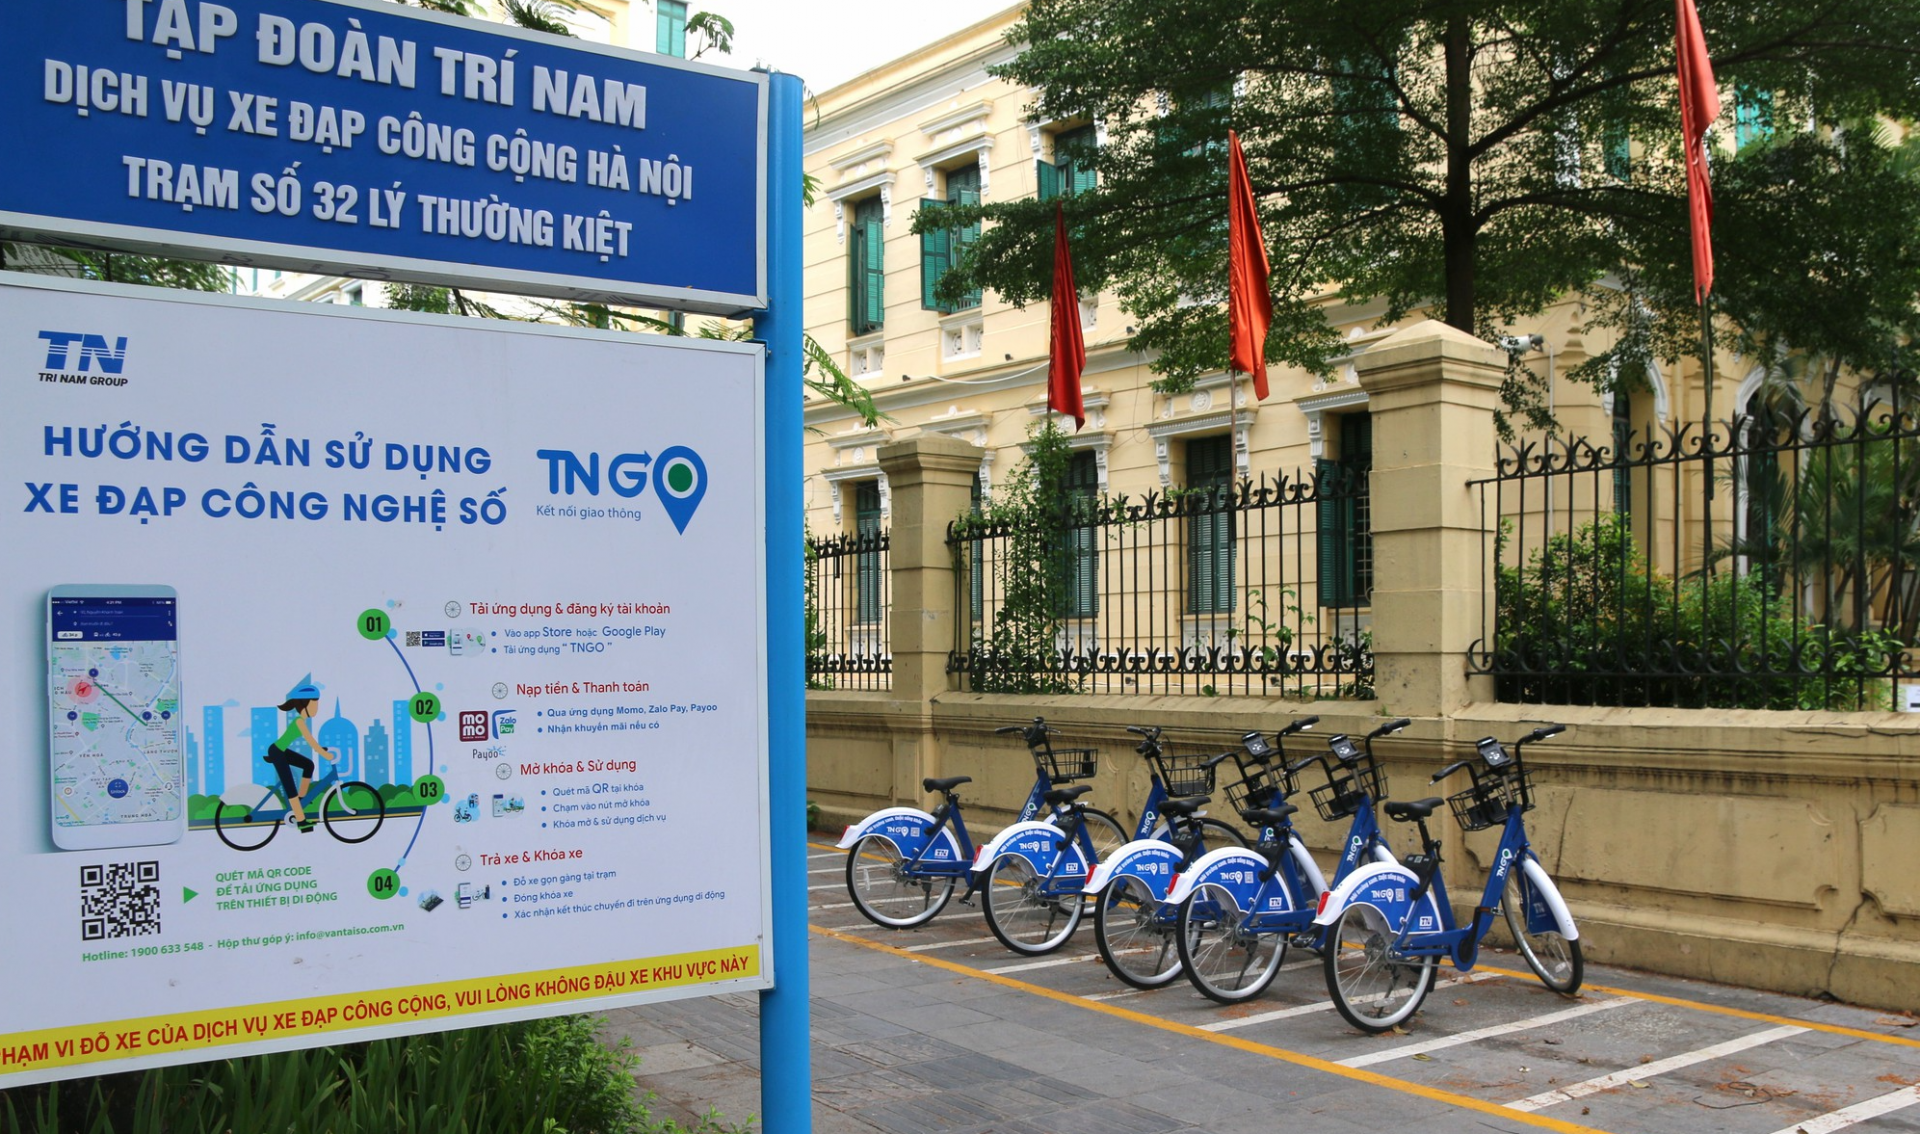 河内市民八月起可骑行共享单车。